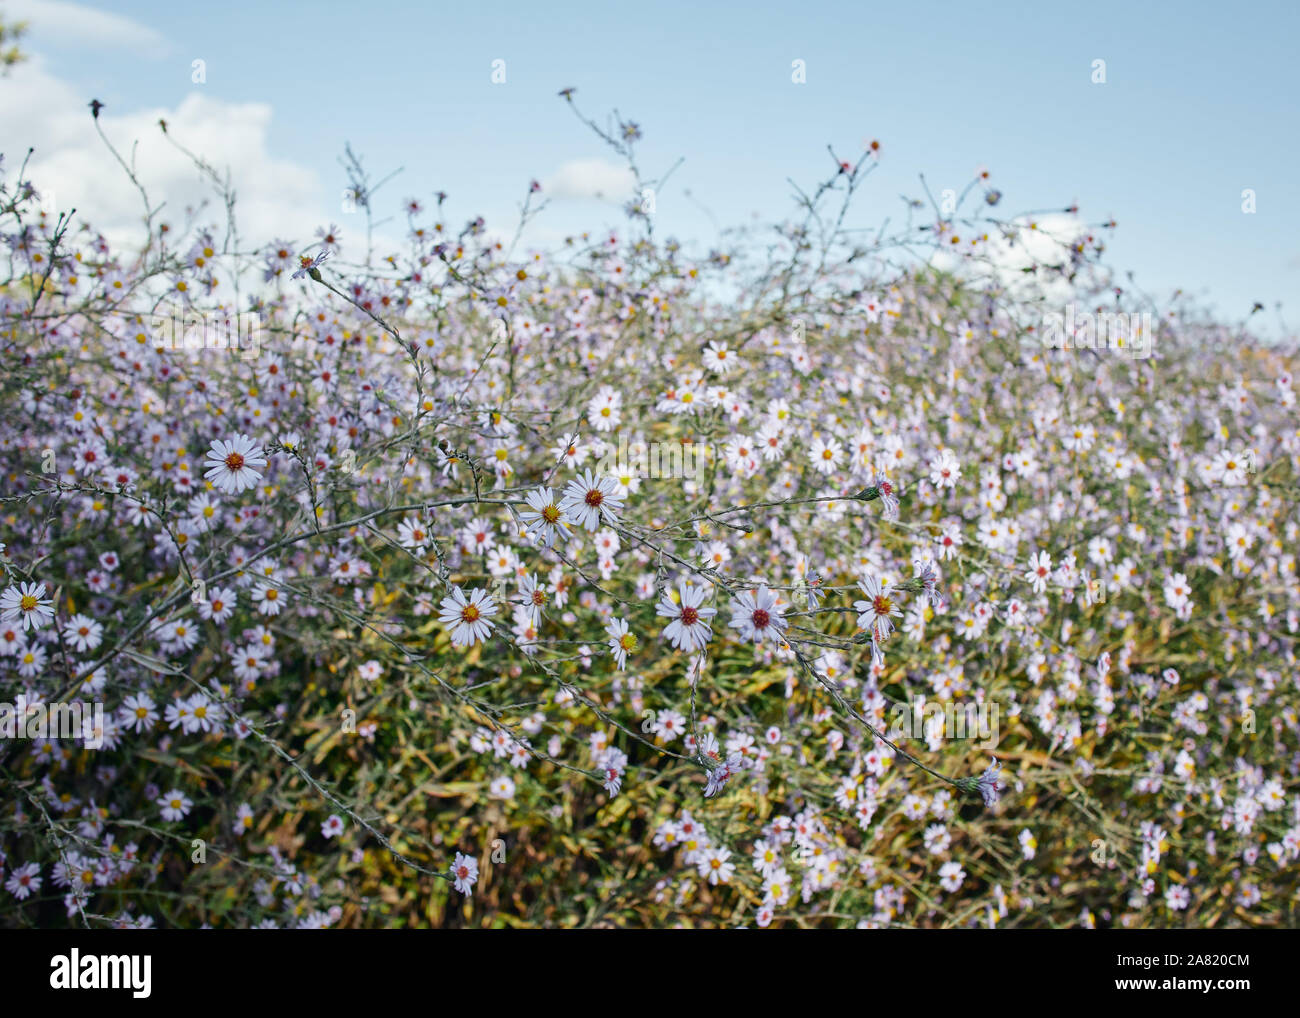 Eine schöne Verbreitung von wilden Marguerite Daisy Blumen auf einem ruhigen sonnigen Tag. Stockfoto